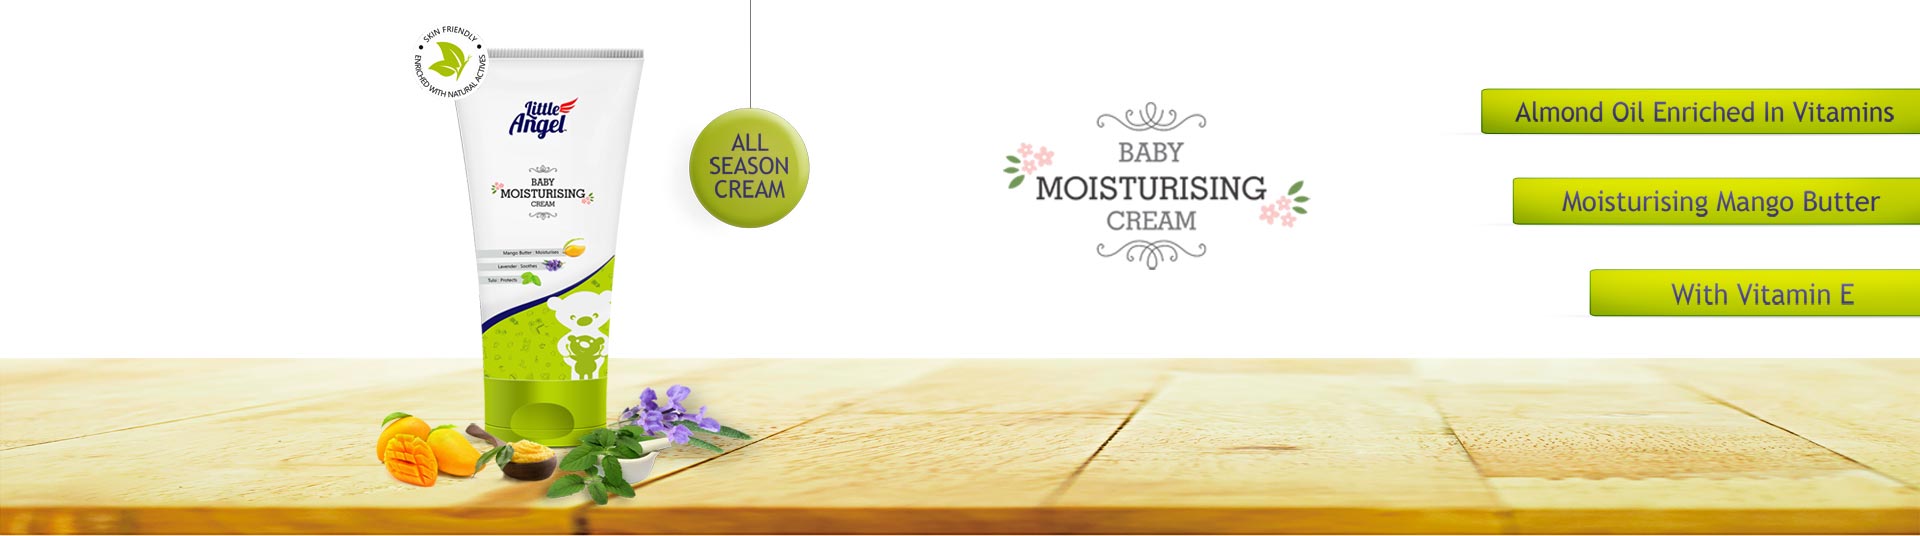 Baby Moisturizing Cream, Baby Moisturizing Cream :: Little Angel